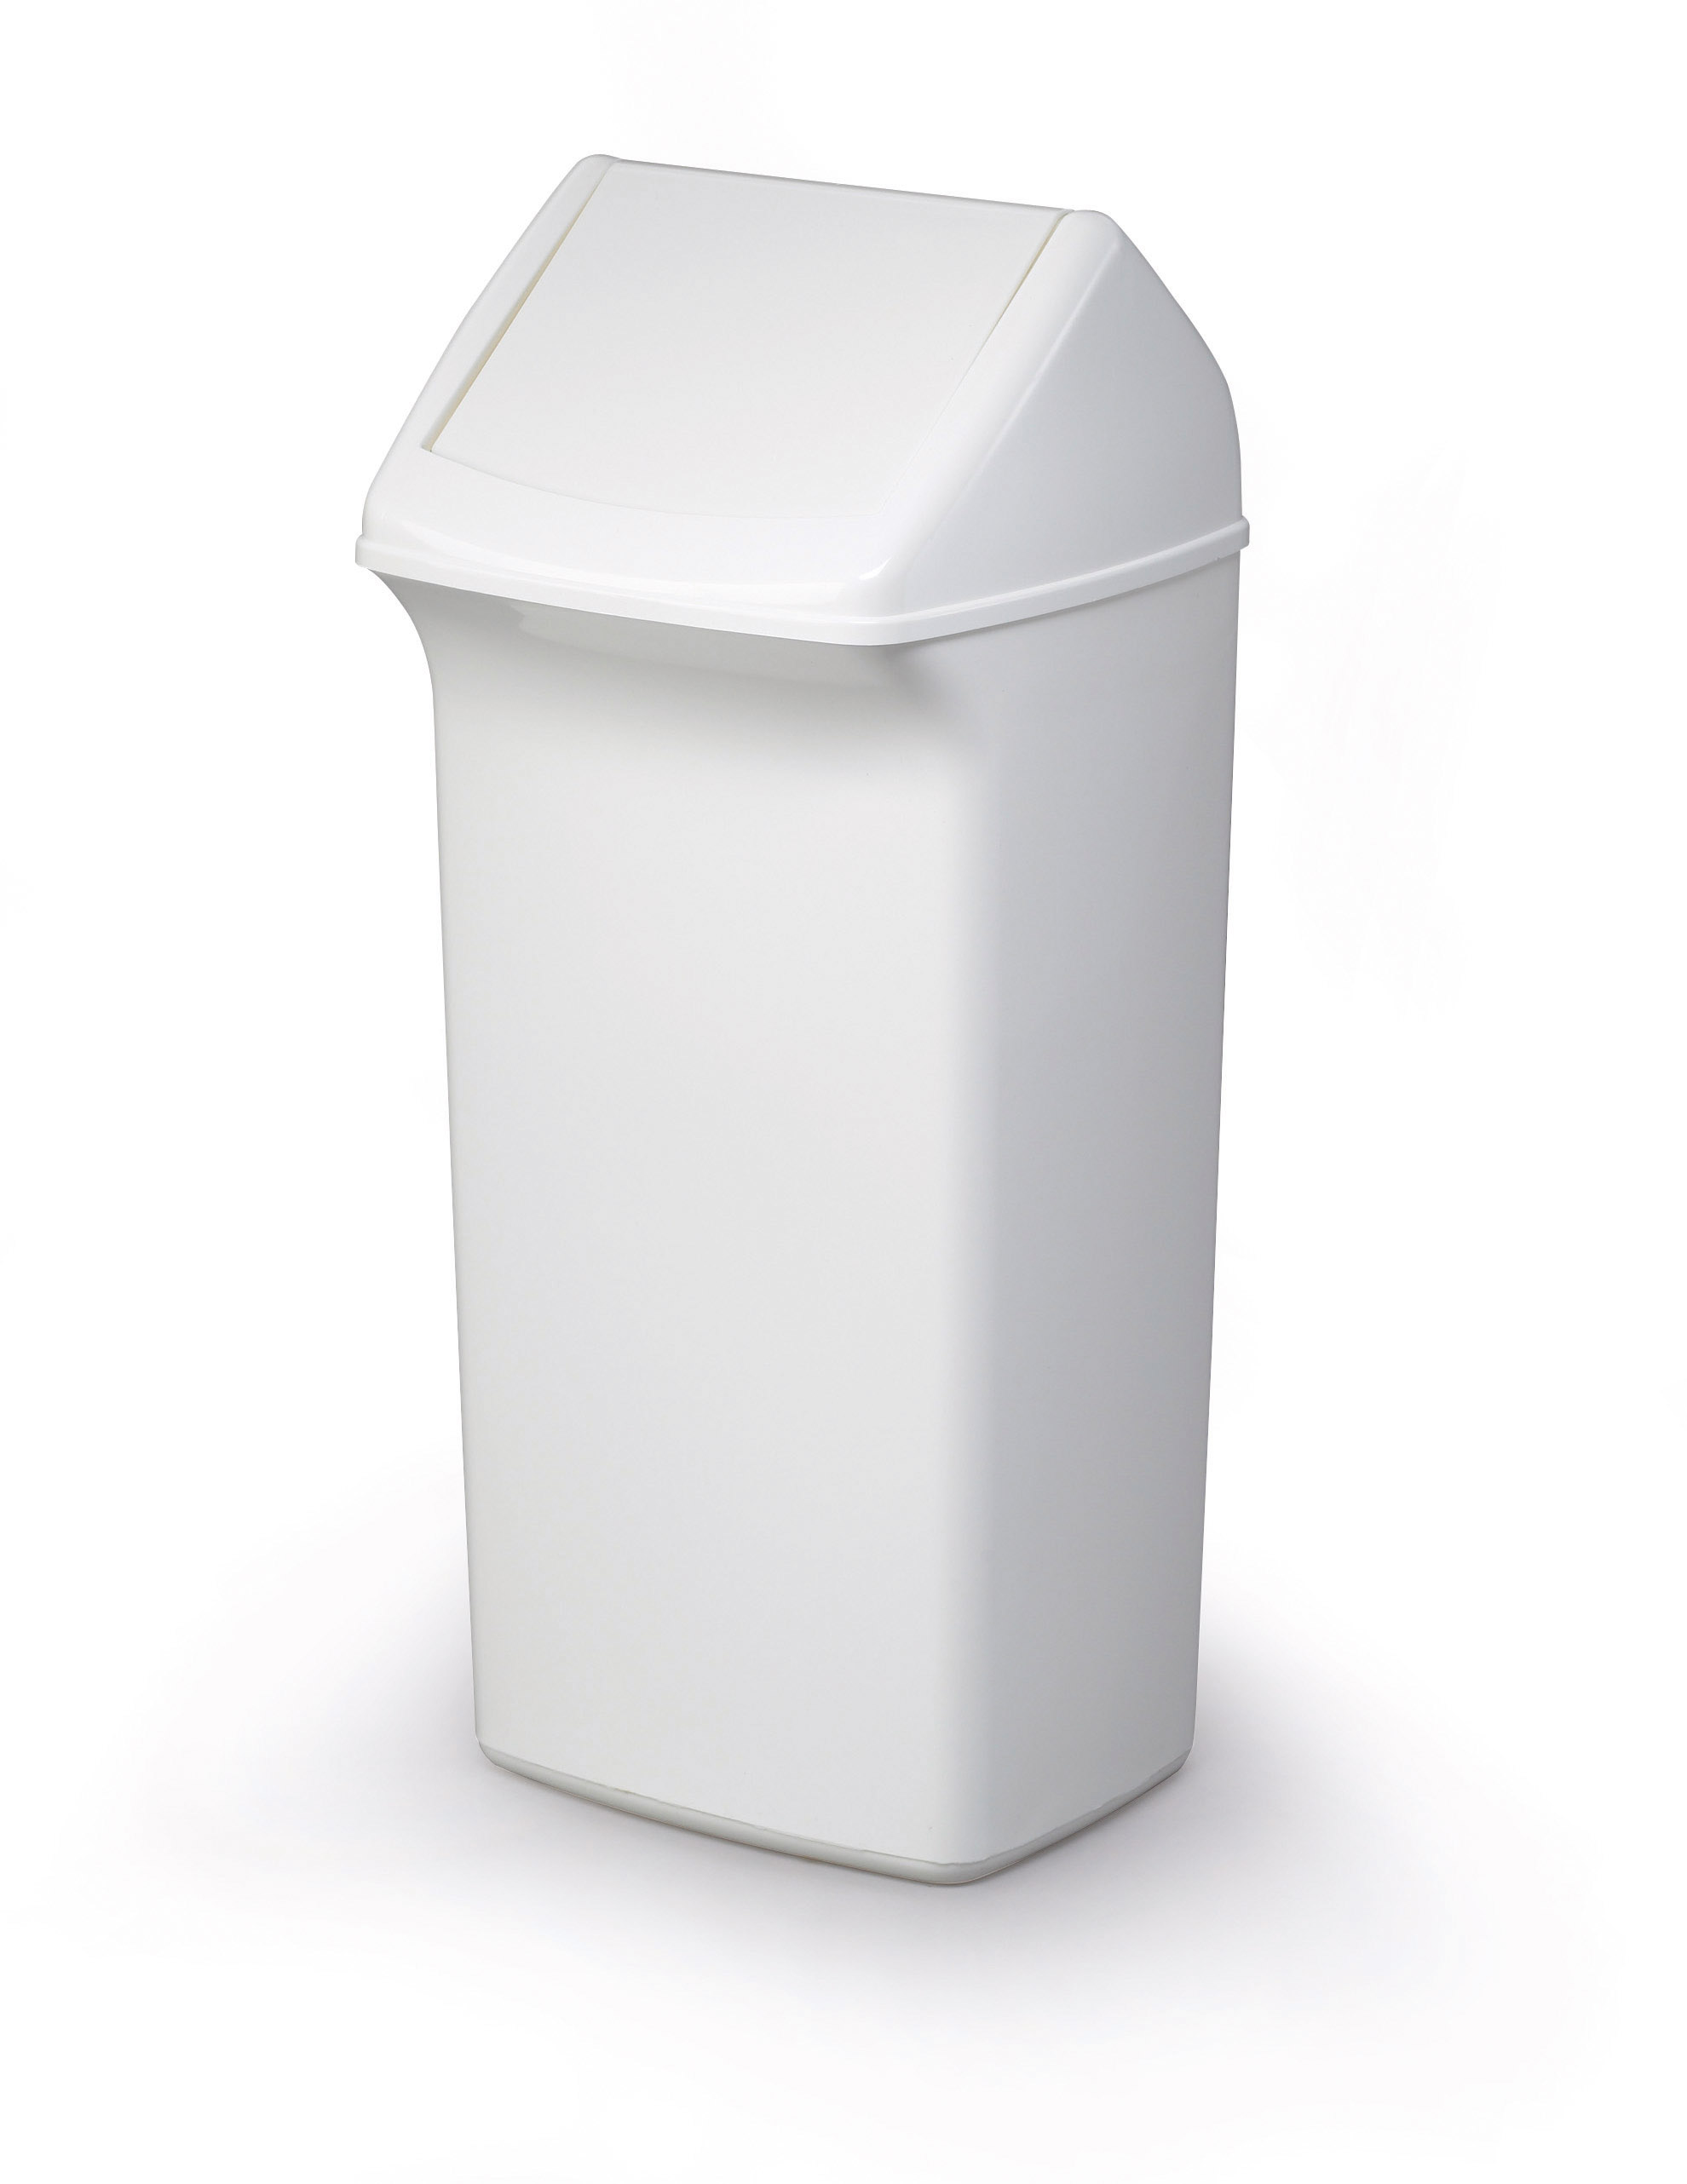 Durable Abfallbehälter mit Schwingdeckel in weiß. Kapazität: 40 L Maße: 330 x 760 x 360 mm (B x H x T)